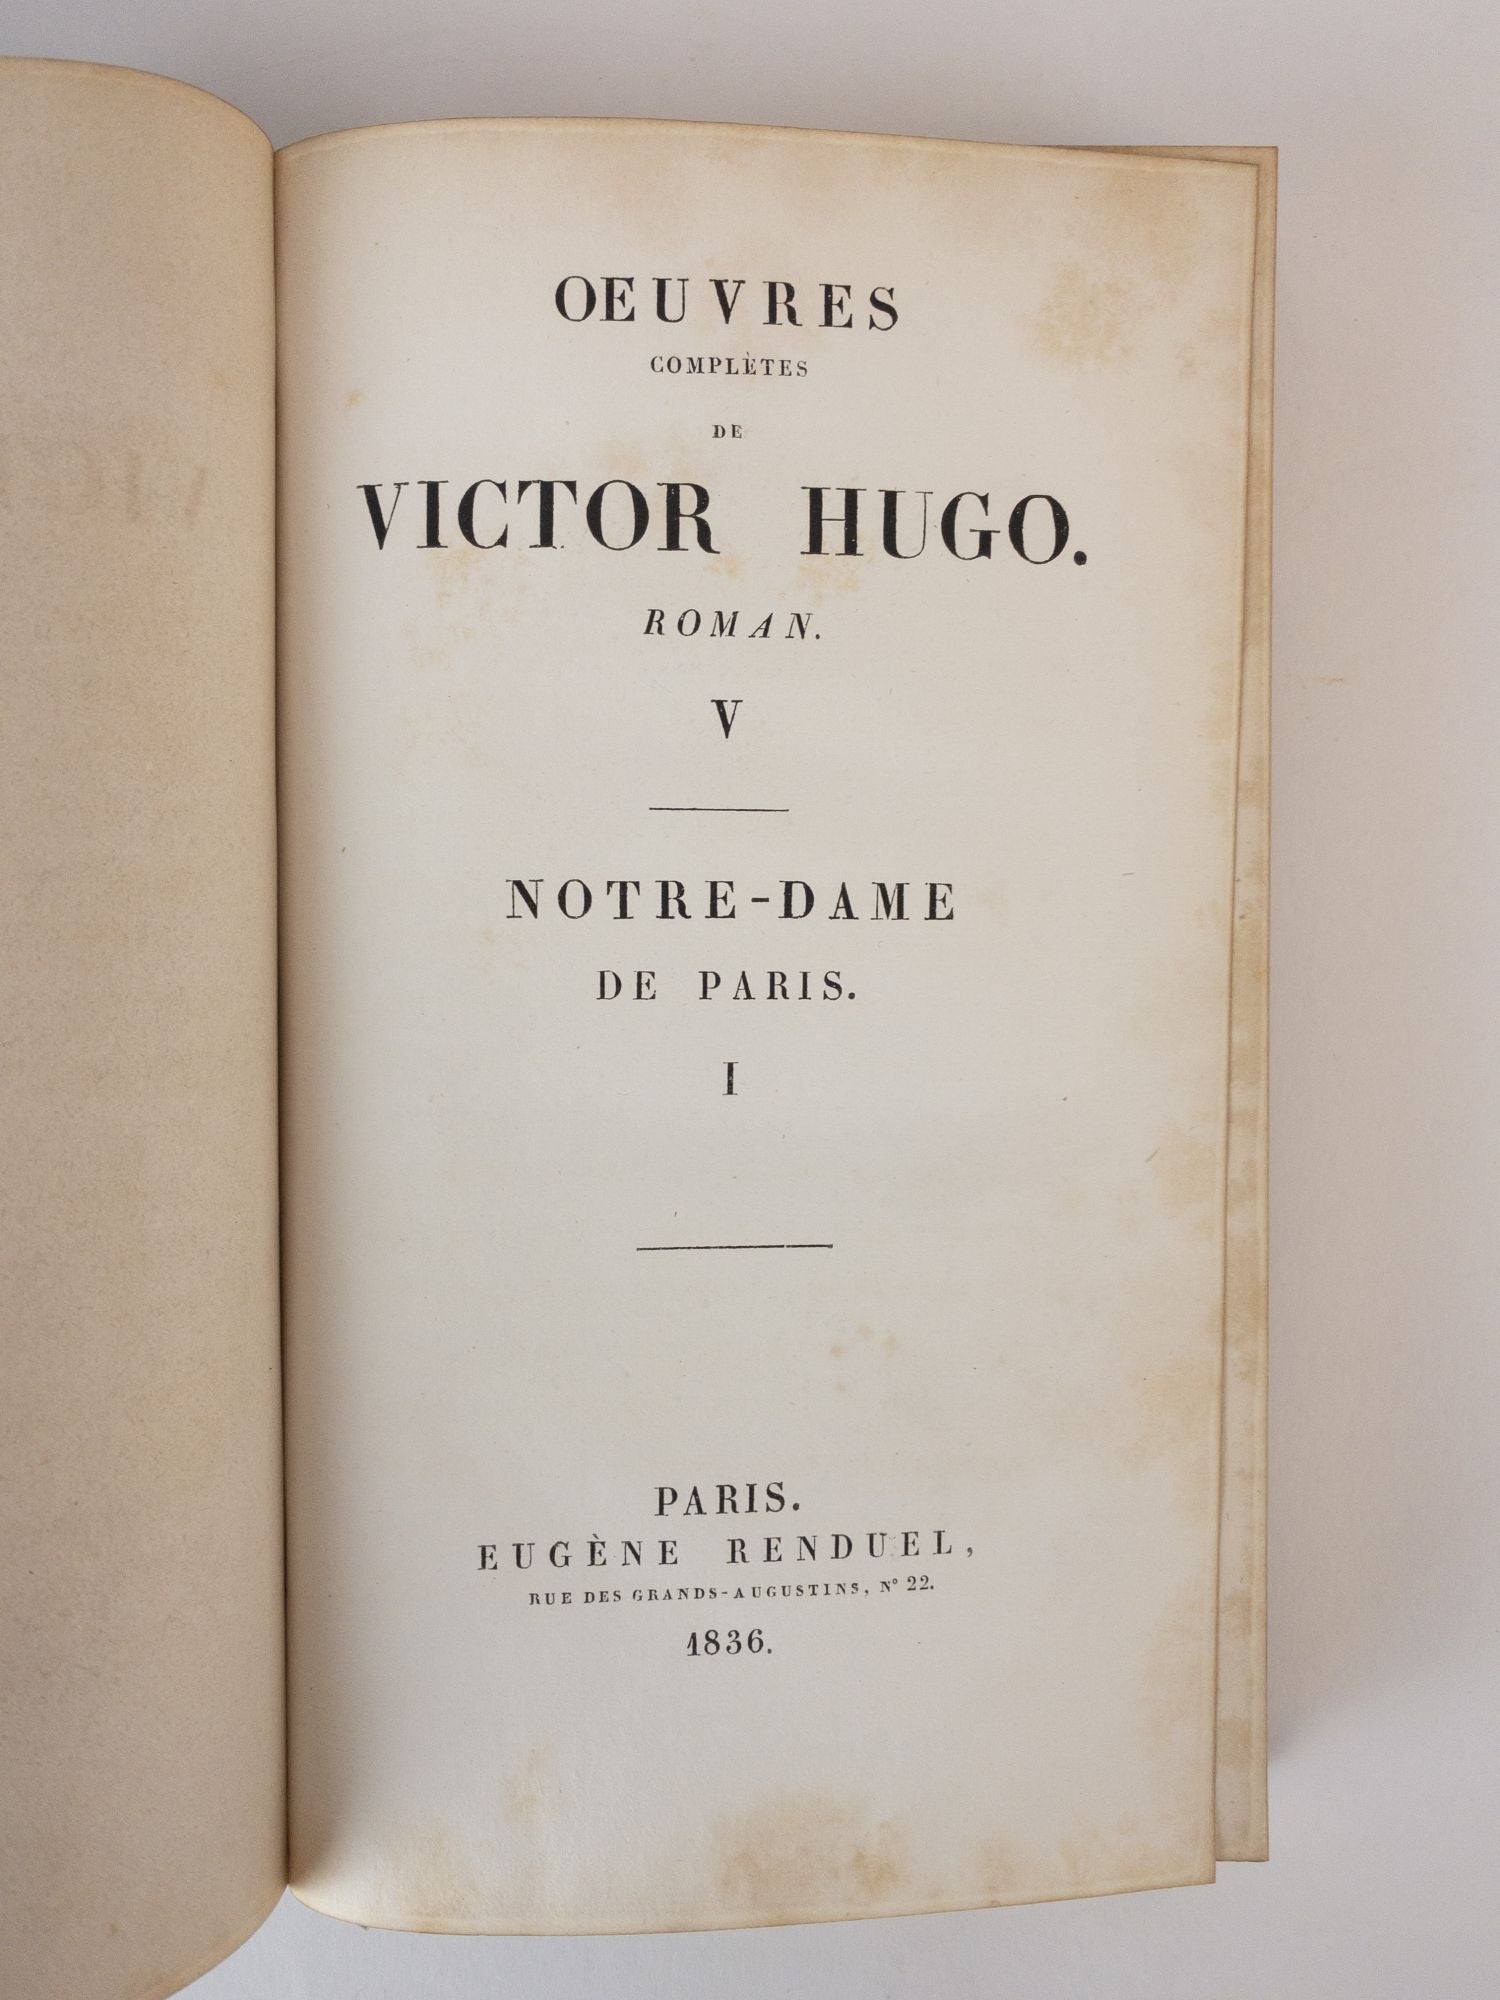 Product Image for NOTRE DAME DE PARIS [Three volumes]